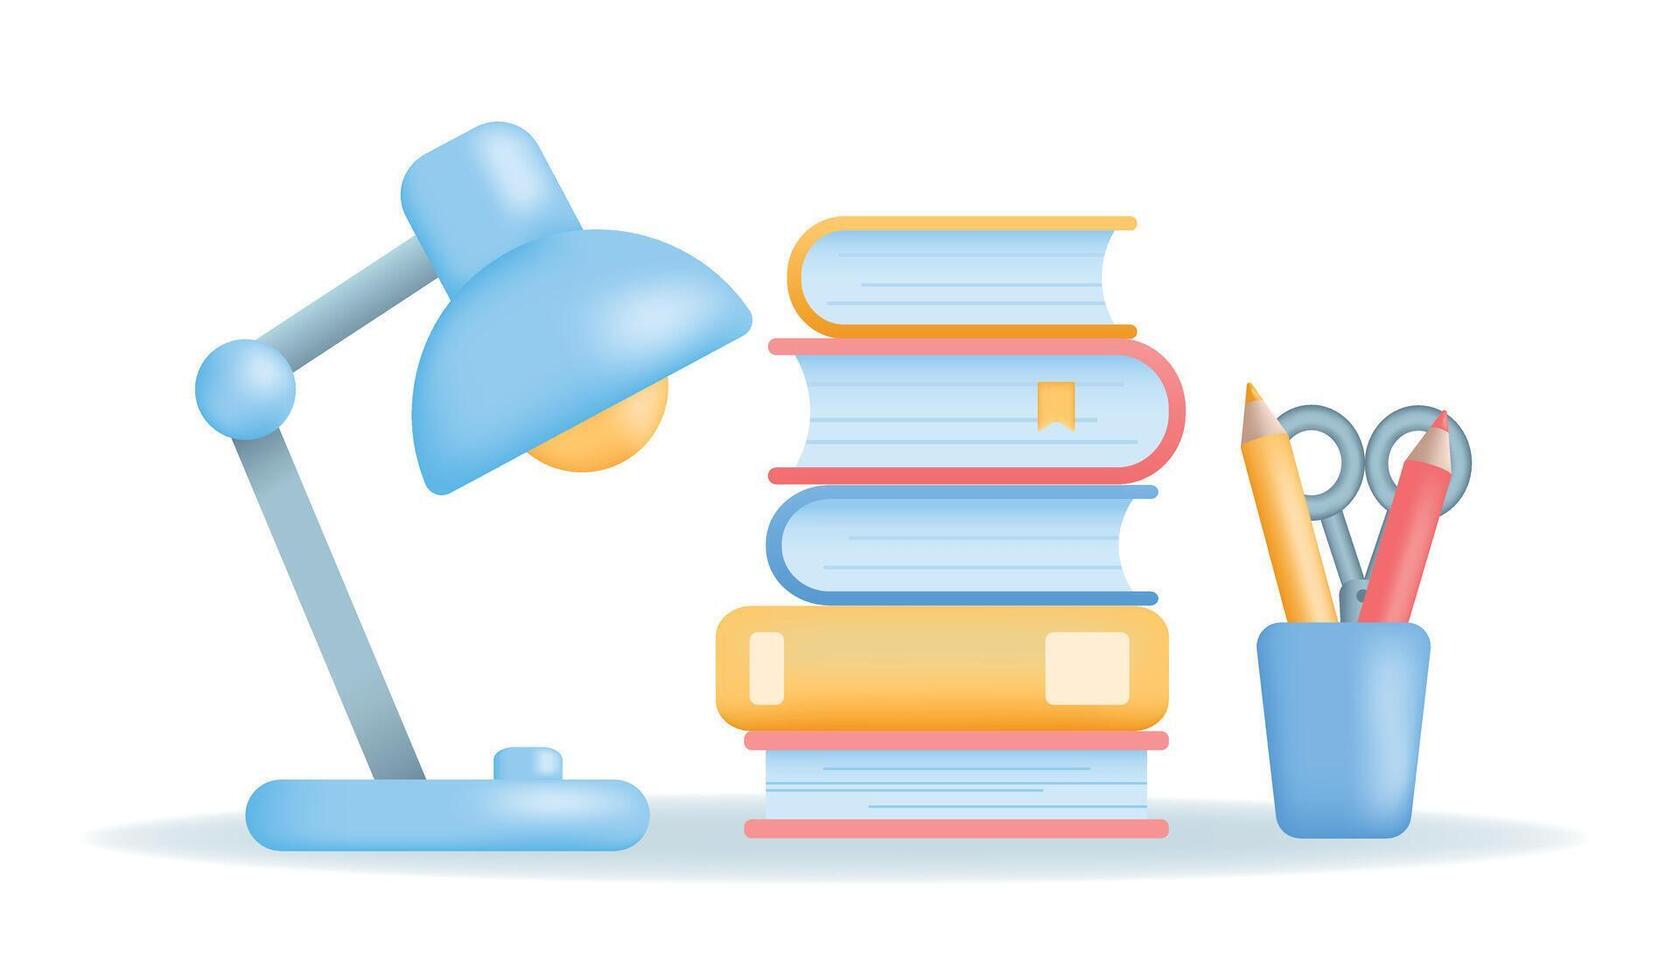 Ausbildung, Lernen, Wissen und Studie 3d Konzept. Lampe, Bücher und Schreibwaren zum Schule, Hochschule oder Universität. vektor